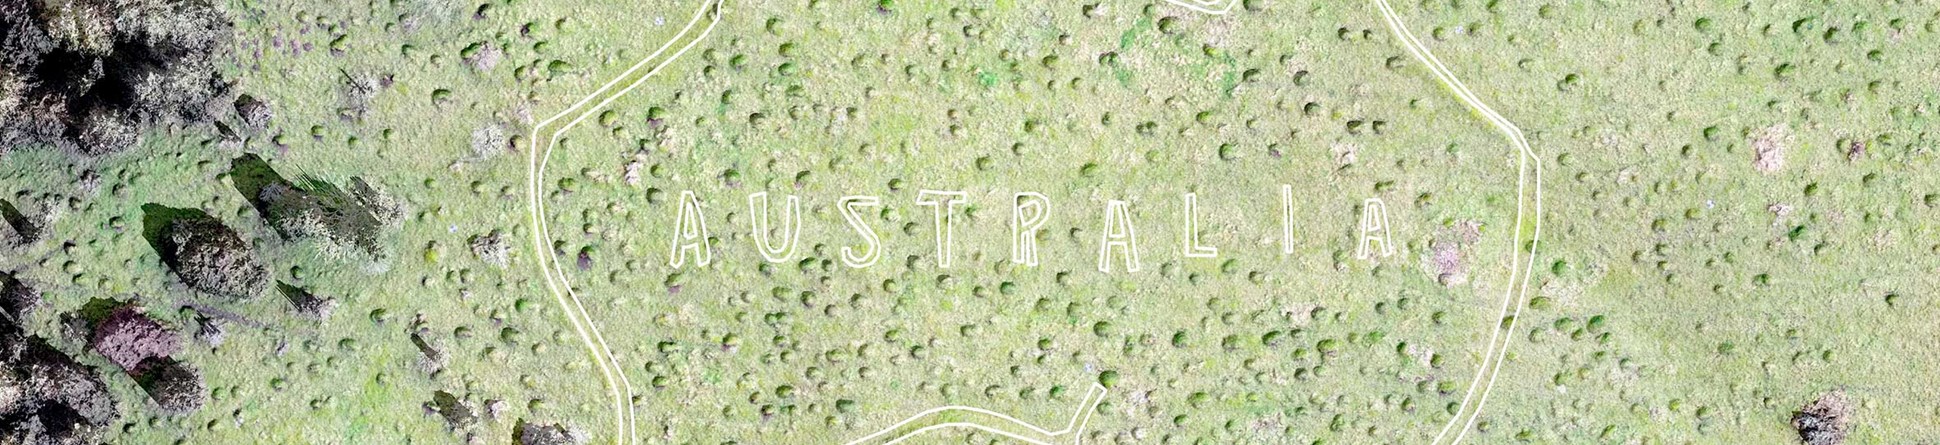 Digital 3D model of a chalk cut map of Australia